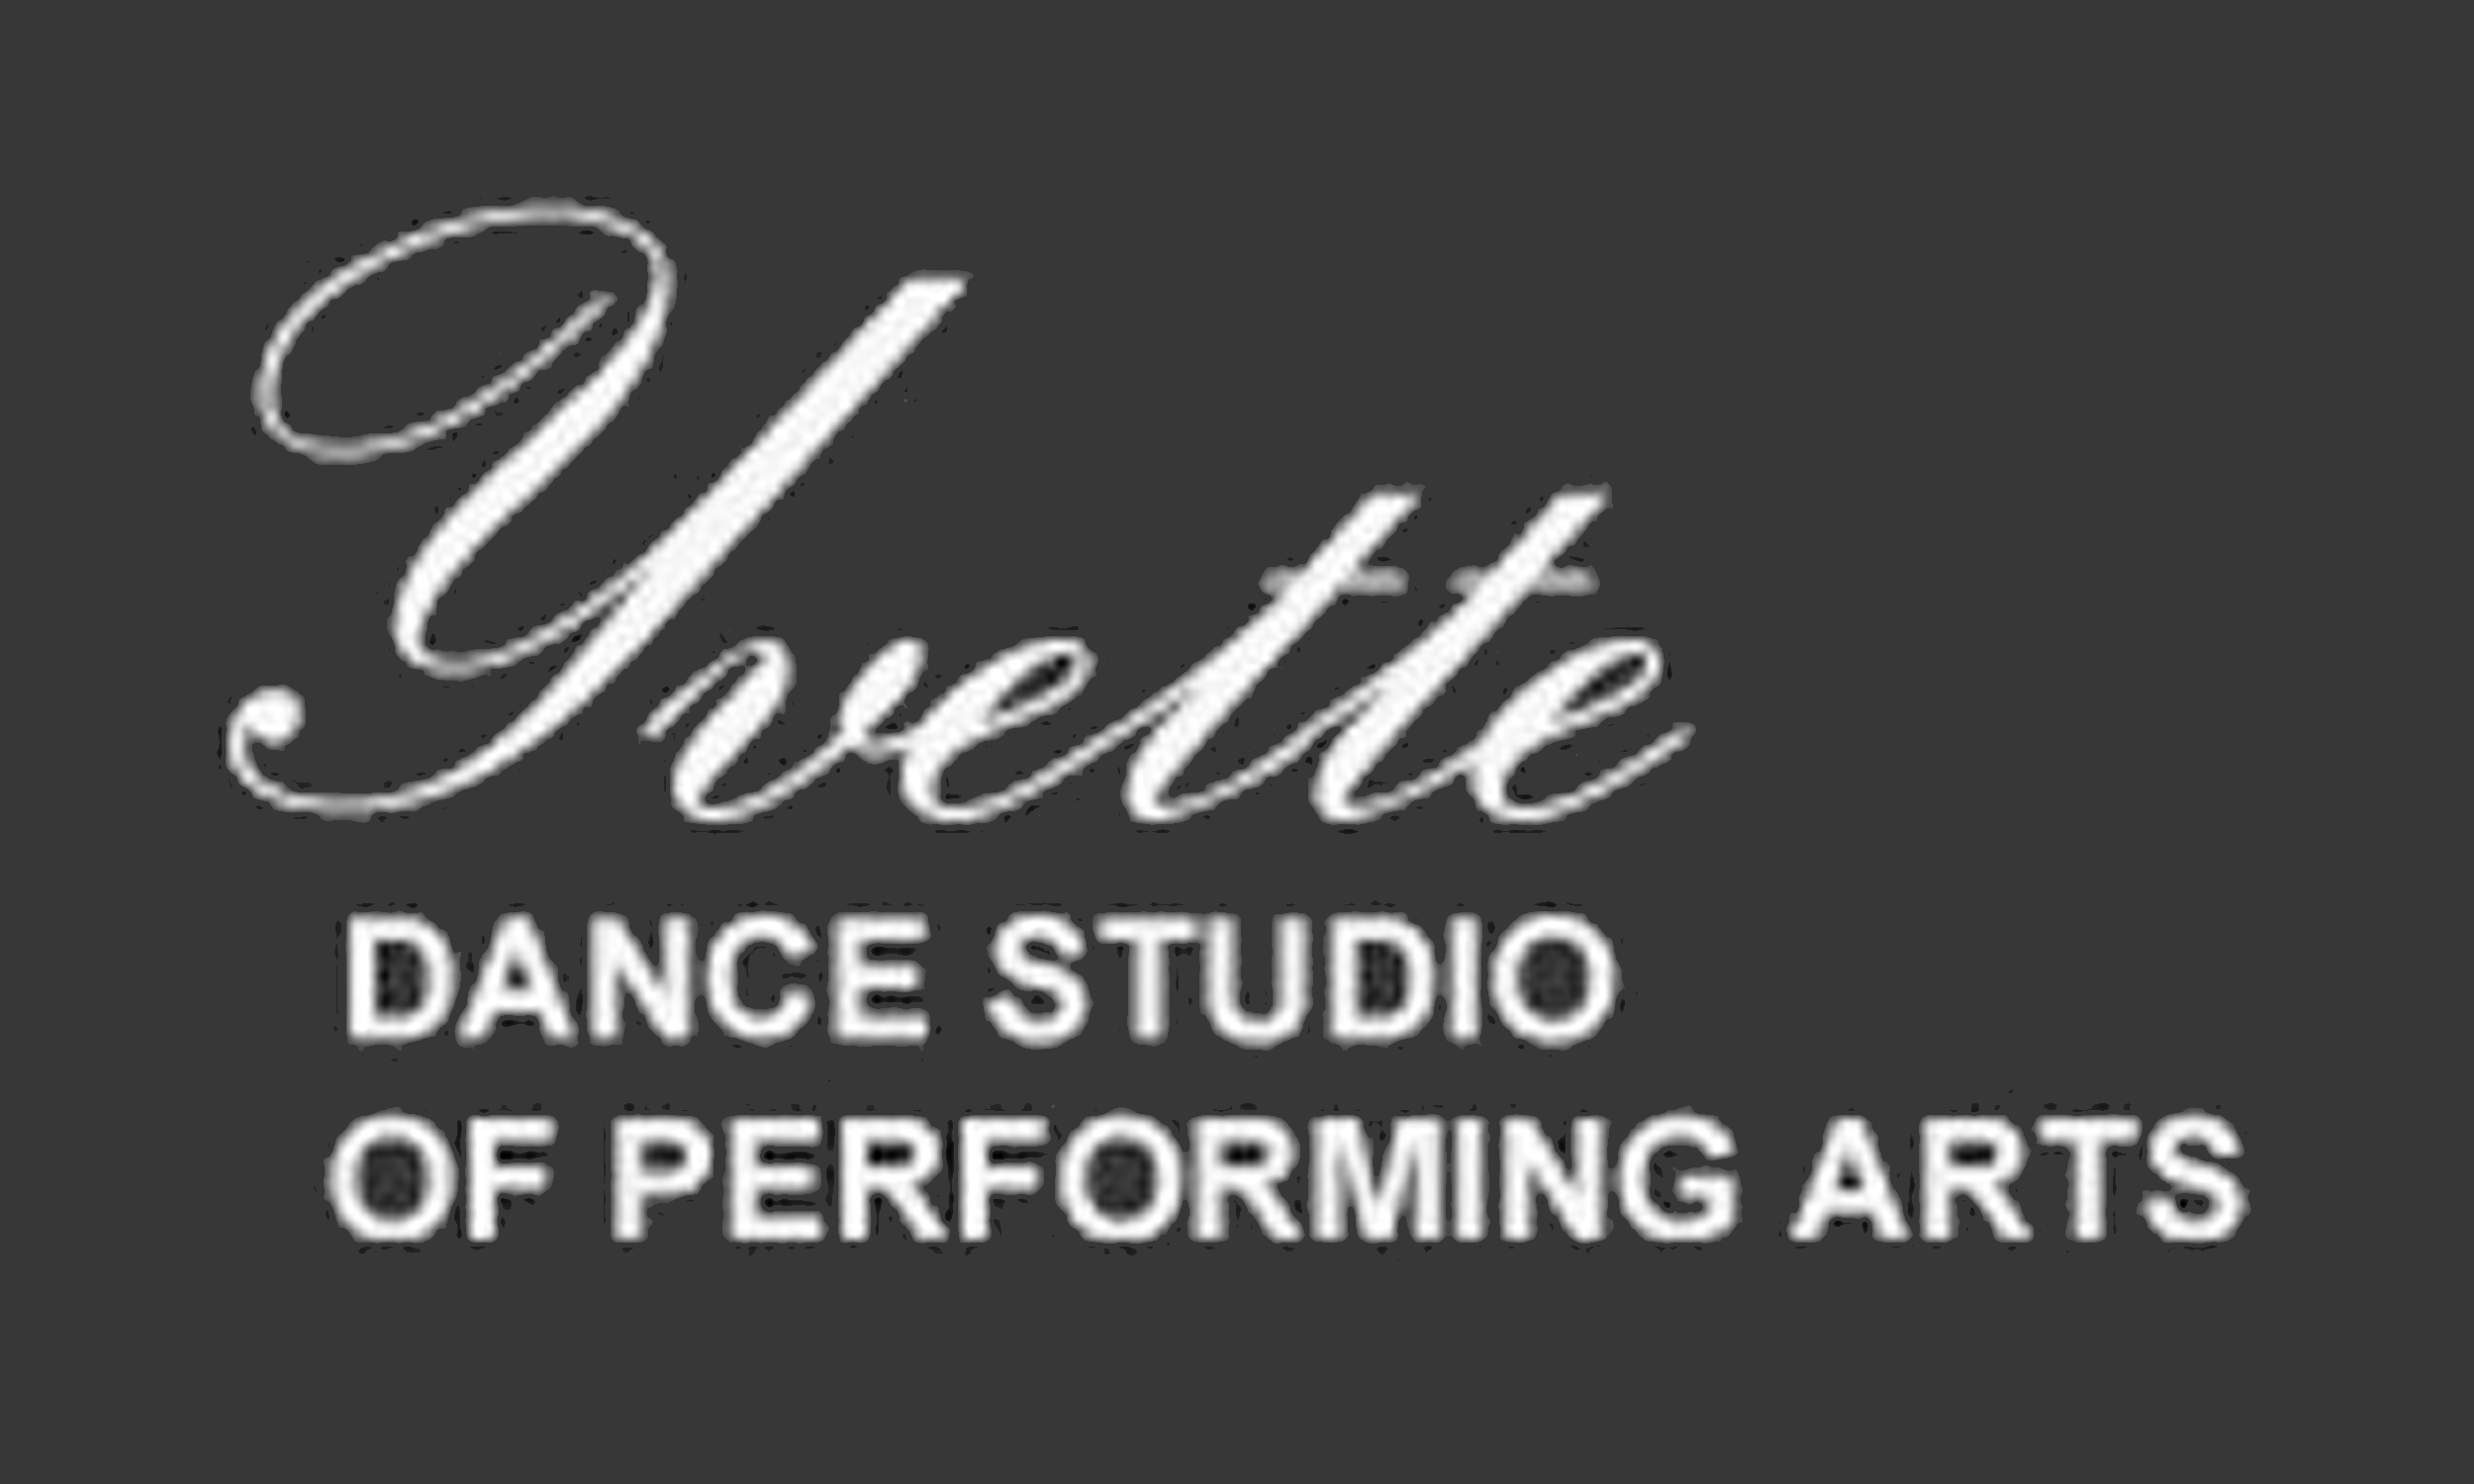 Yvette Dance Studio